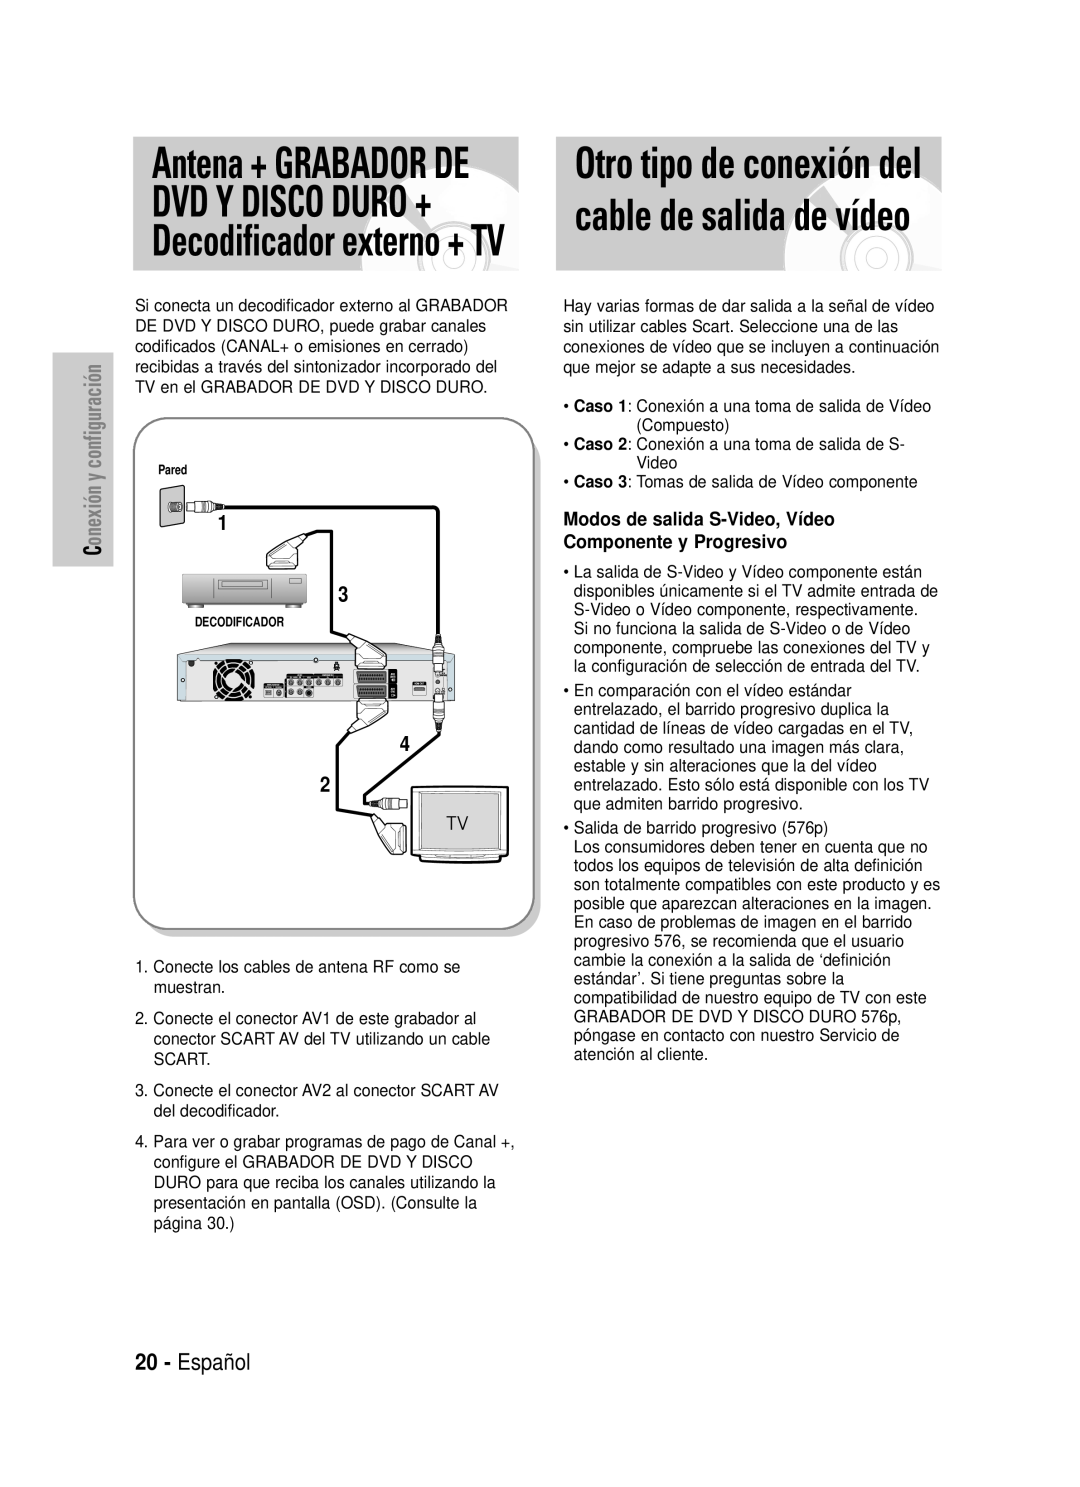 Samsung DVD-HR725/XEN, DVD-HR725/XEG Otro tipo de conexión del cable de salida de vídeo, Español, Conexión y configuración 